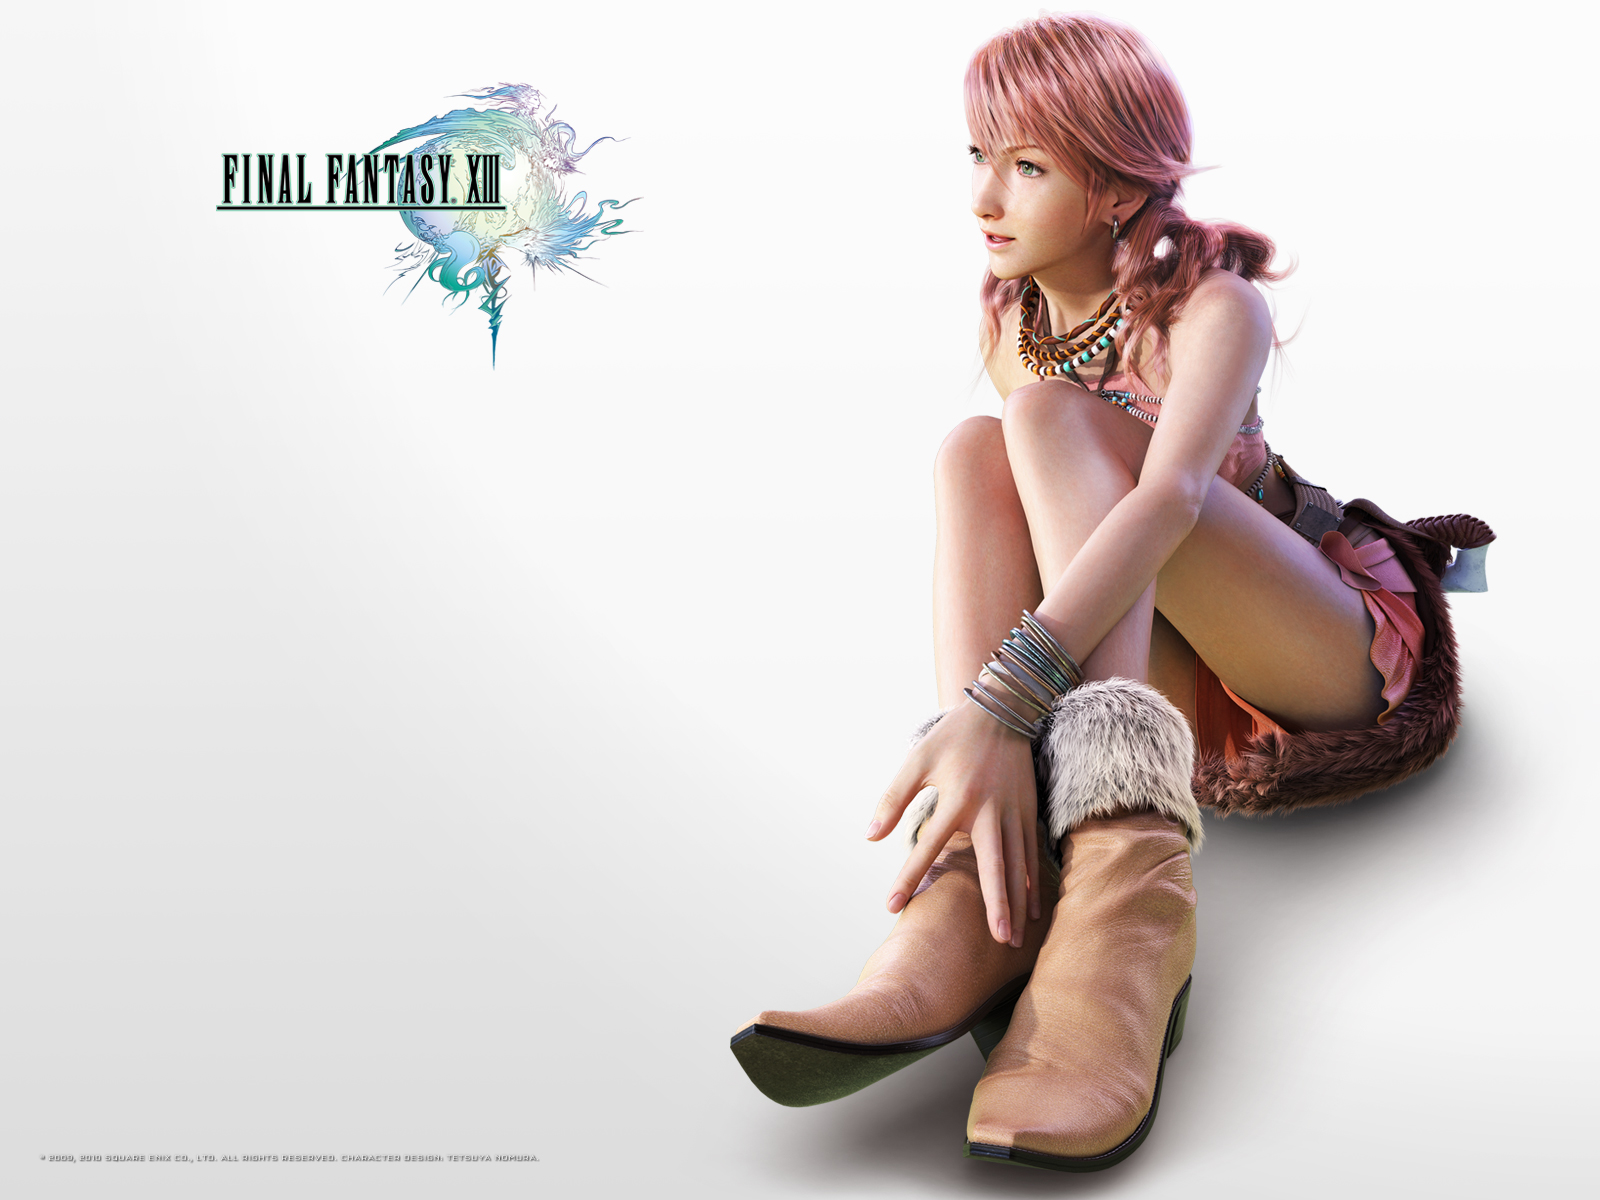 Final Fantasy Xiii Ffxiii Ff13 Wallpaper